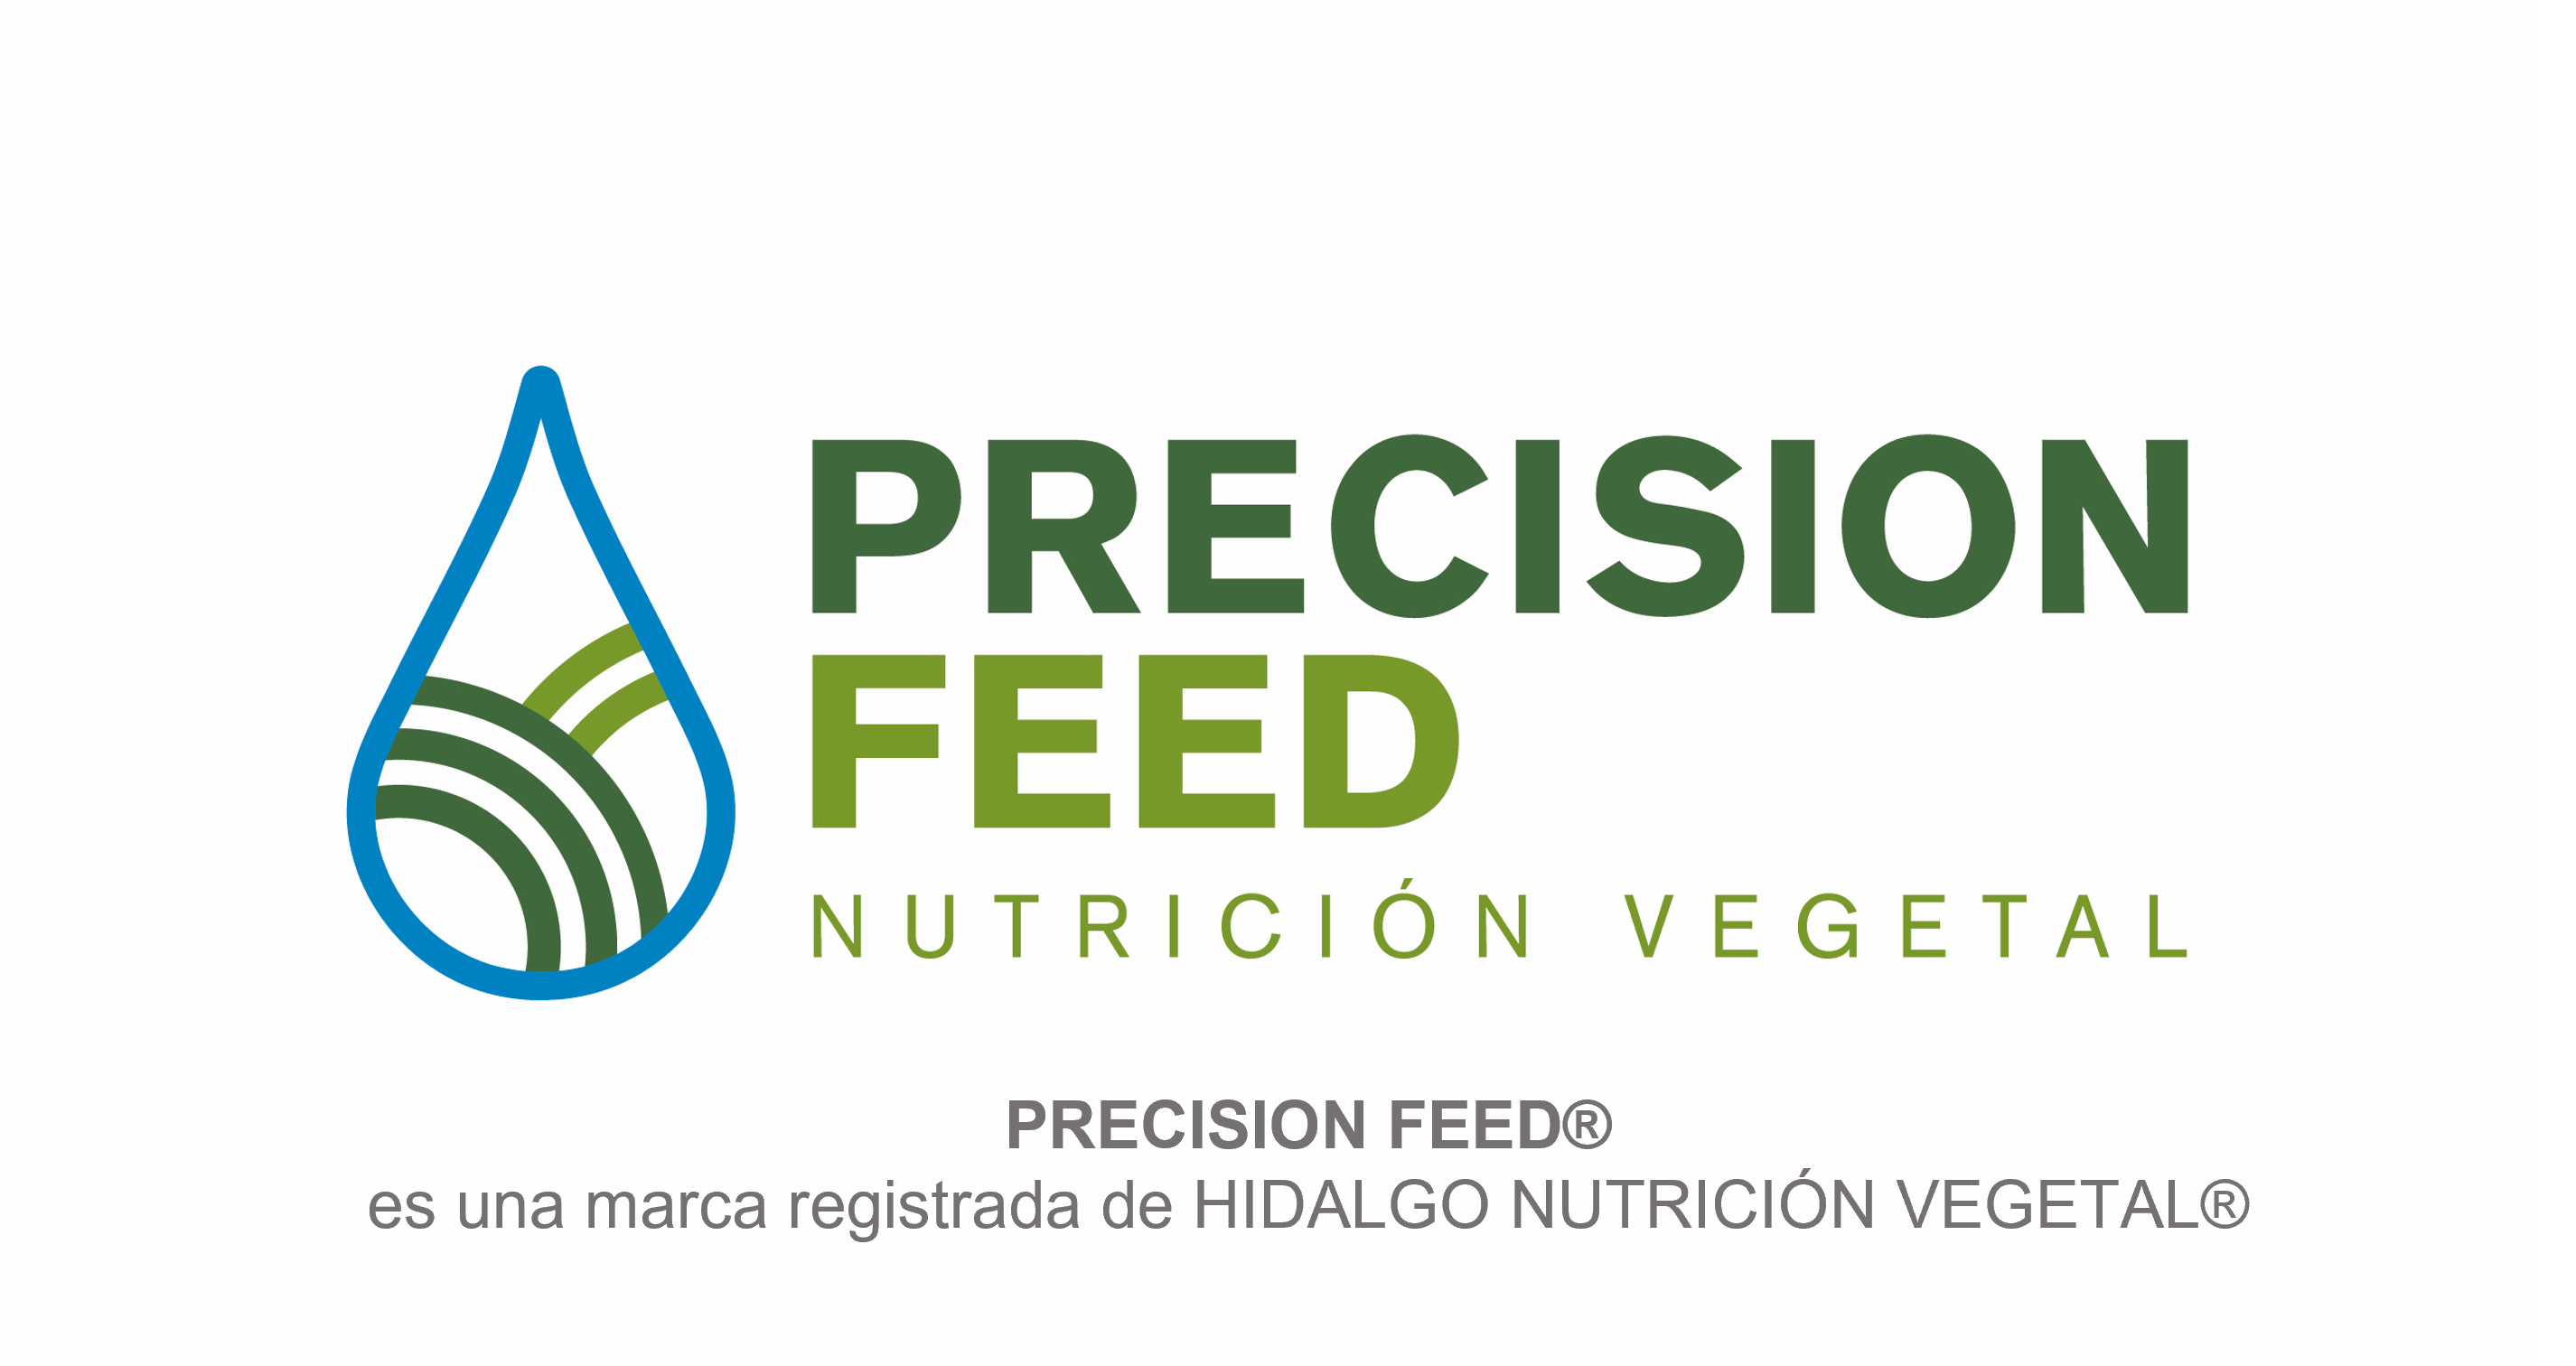 PRECISION FEED de HIDALGO NUTRICIÓN VEGETAL